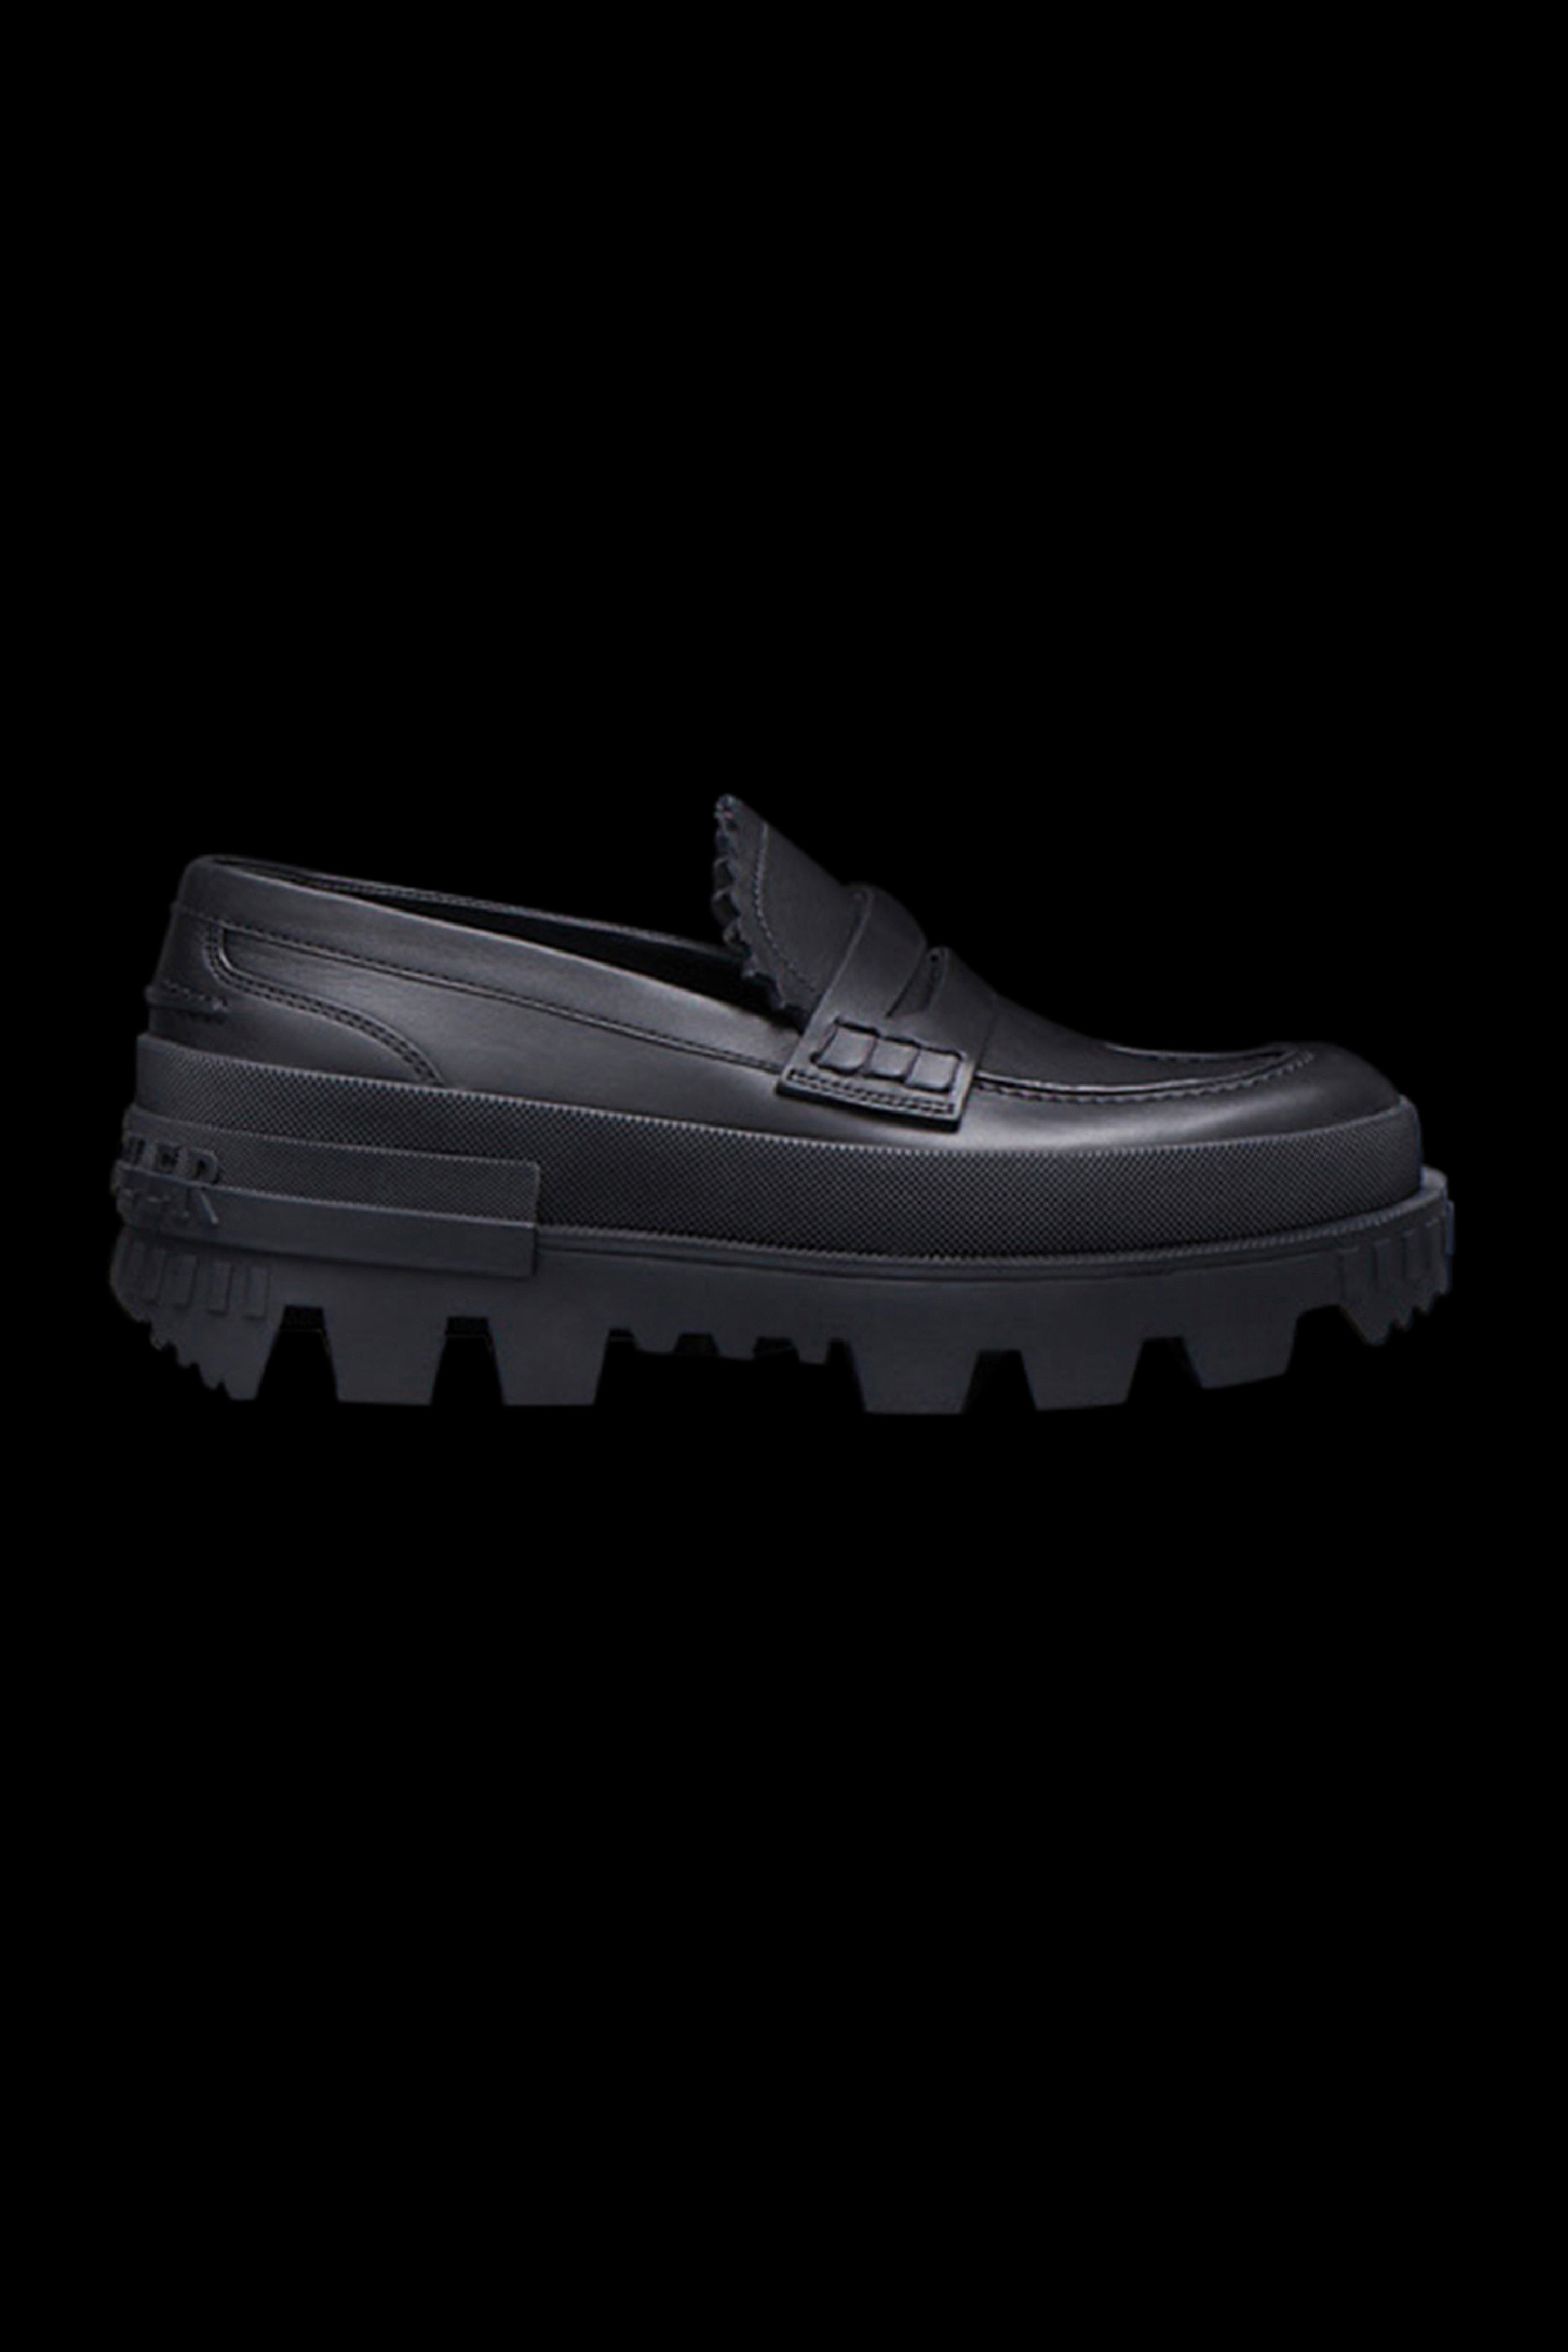 Mujer Zapatos de Zapatos planos Mocasines Maxence con suela gruesa de Moncler de color Negro sandalias y chanclas de Mocasines 